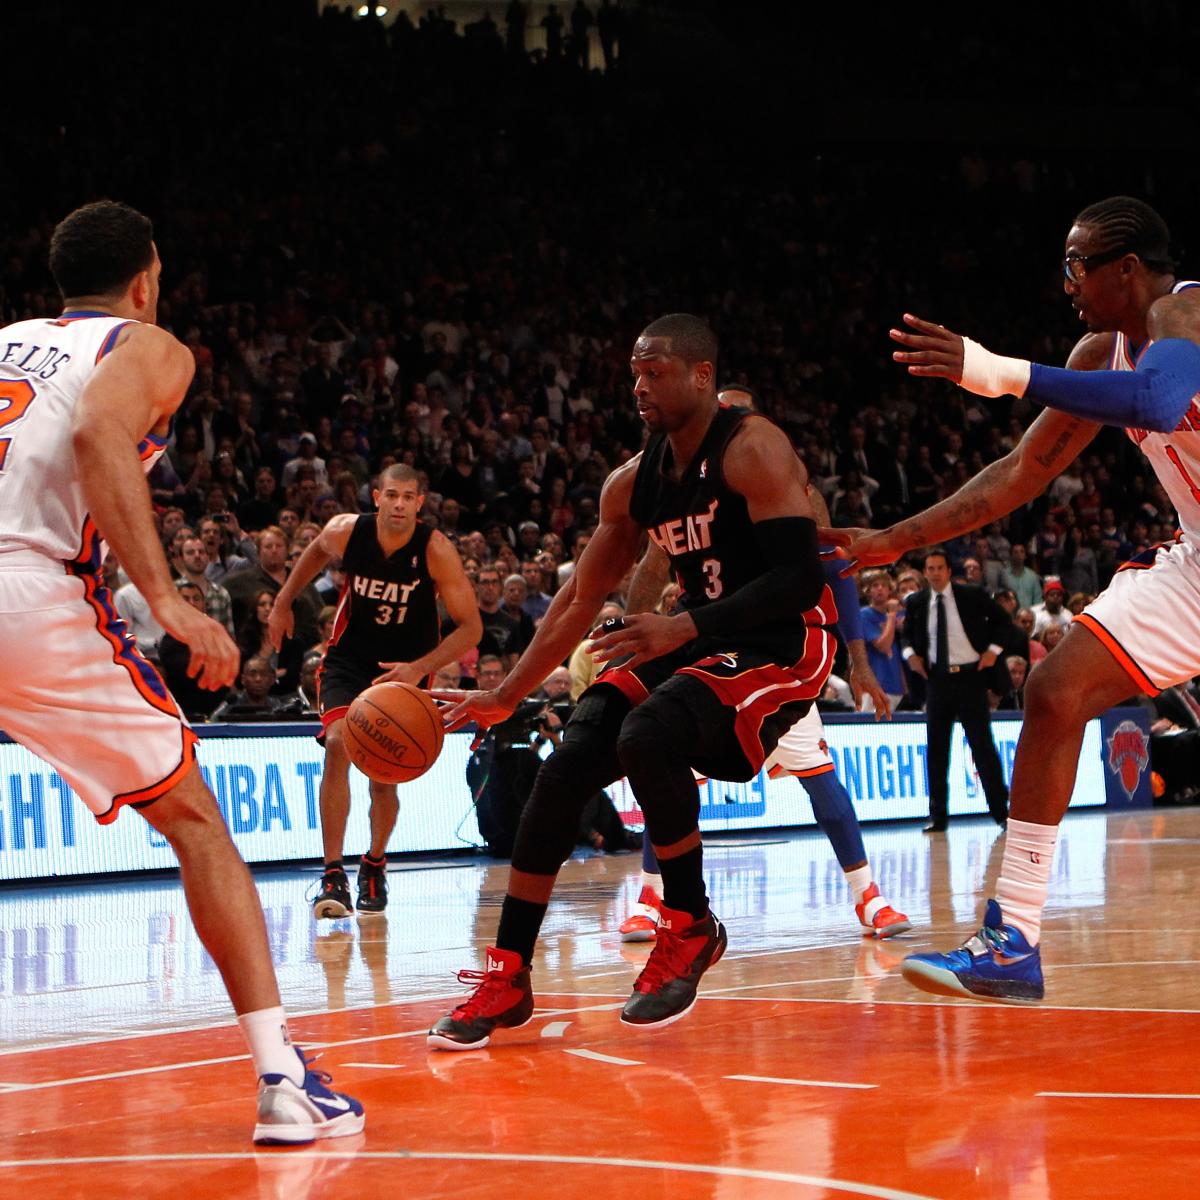 Miami Heat vs. Knicks Game 5: TV Schedule, Live Stream, Spread Info and More ...